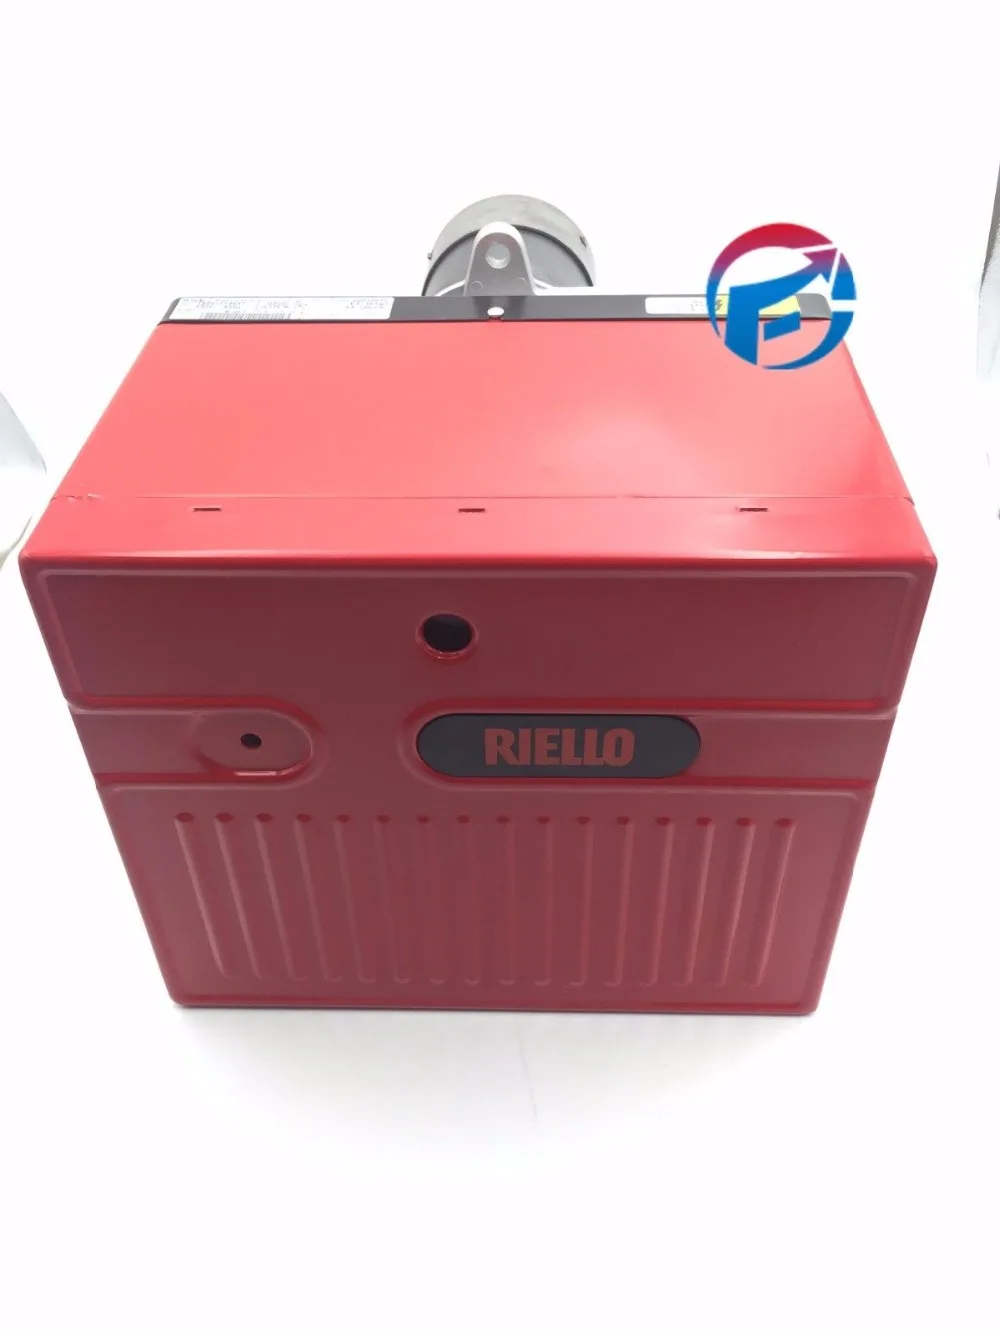 

Промышленная дизельная горелка Riello R40 G10, камера распыления нагревательные горелки, керосиновая горелка